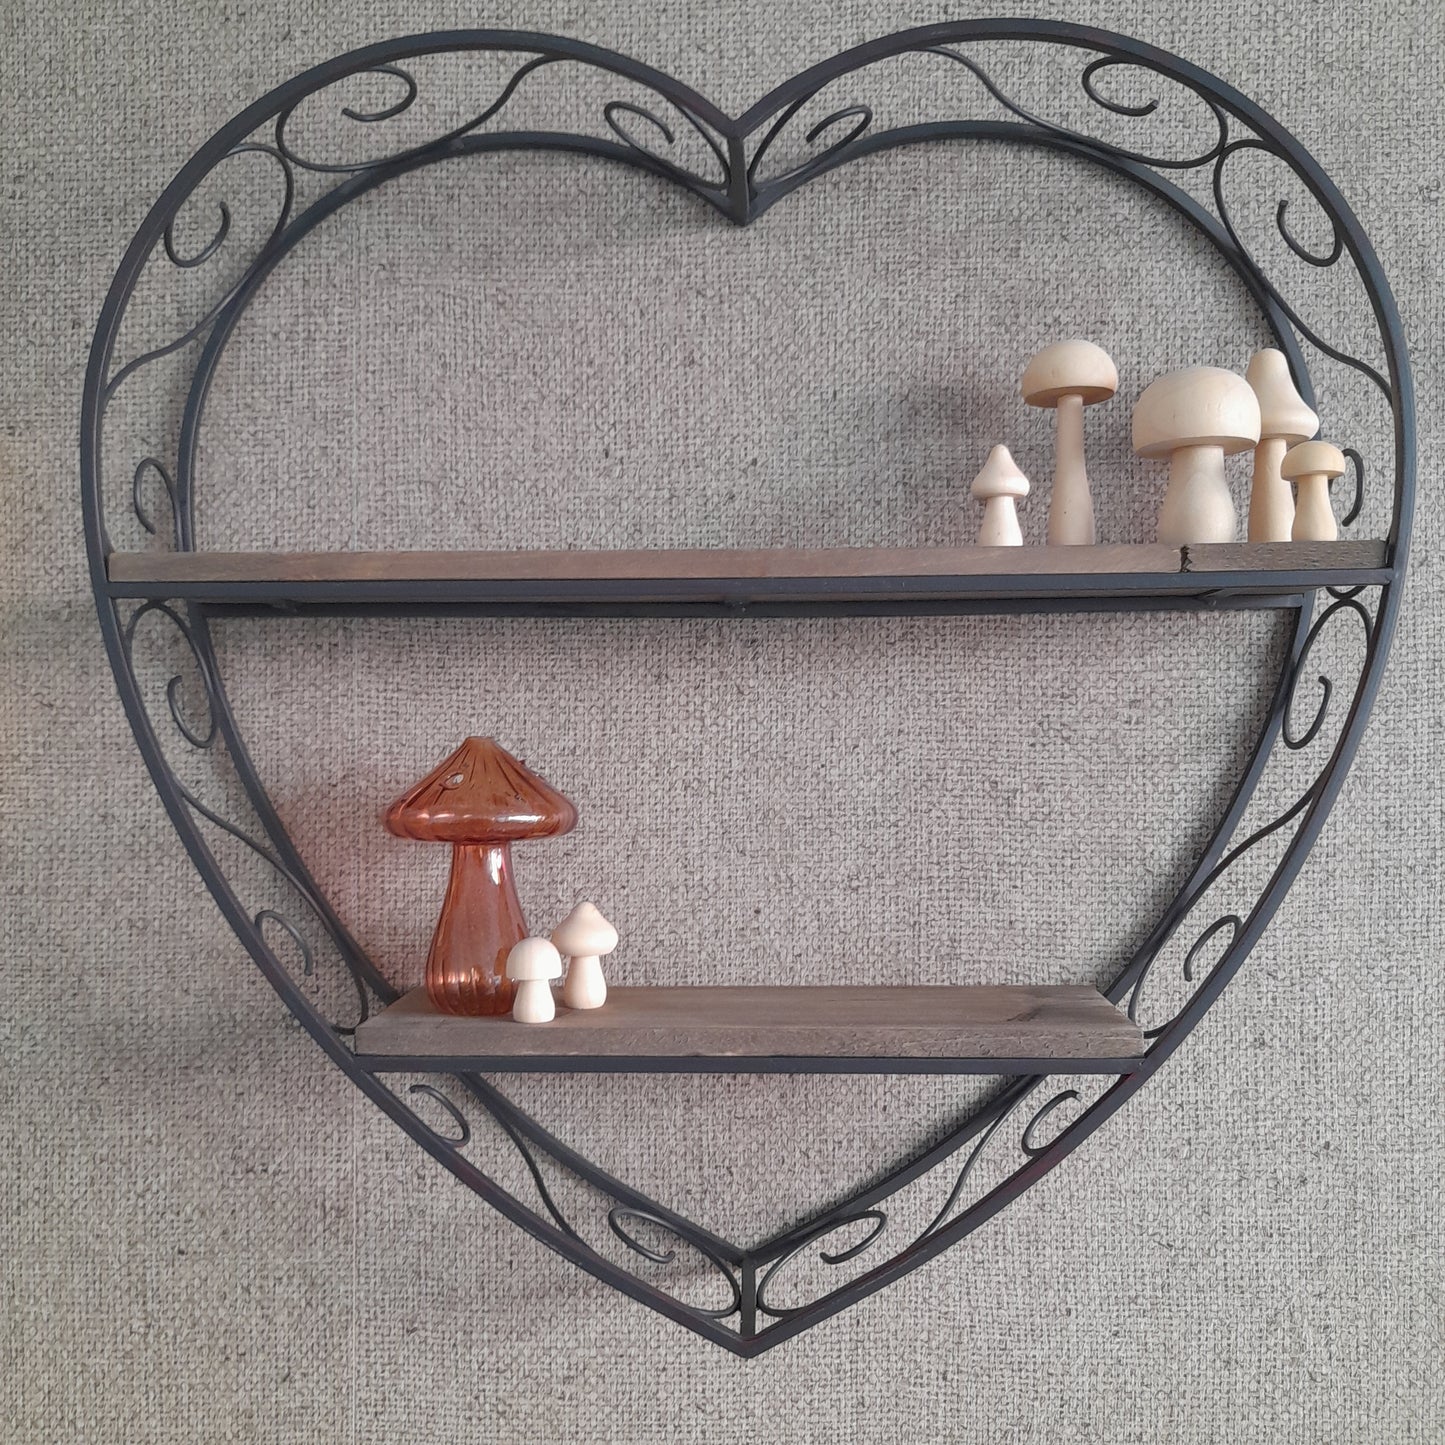 Heart-shaped metal & wood shelves